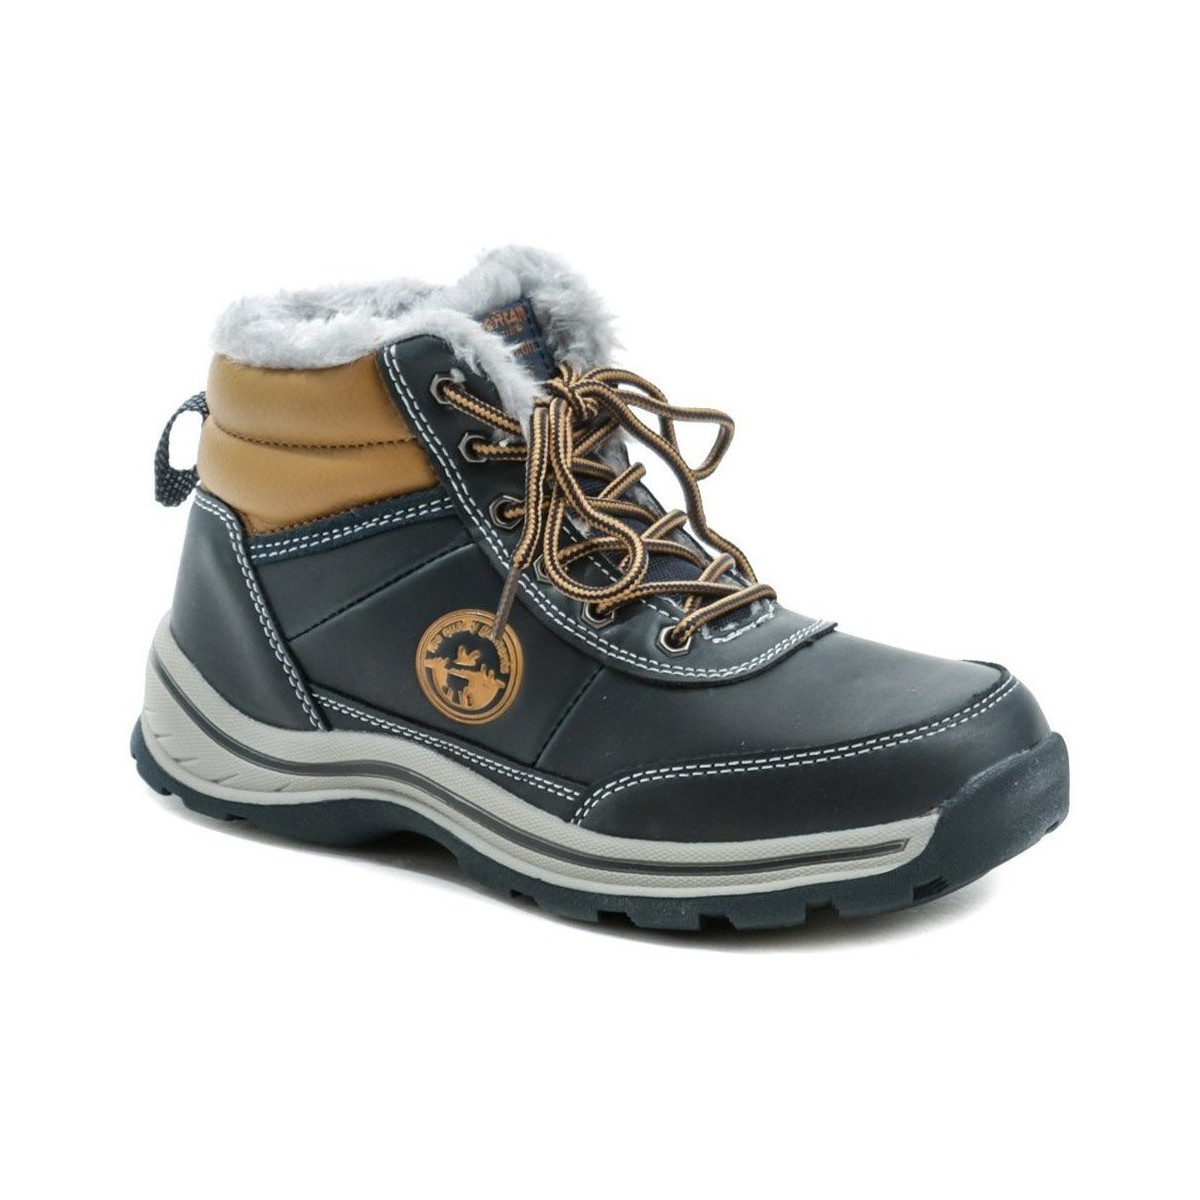 Boty Chlapecké Kotníkové boty American Club ES46-19 modré zimní dětské boty Modrá